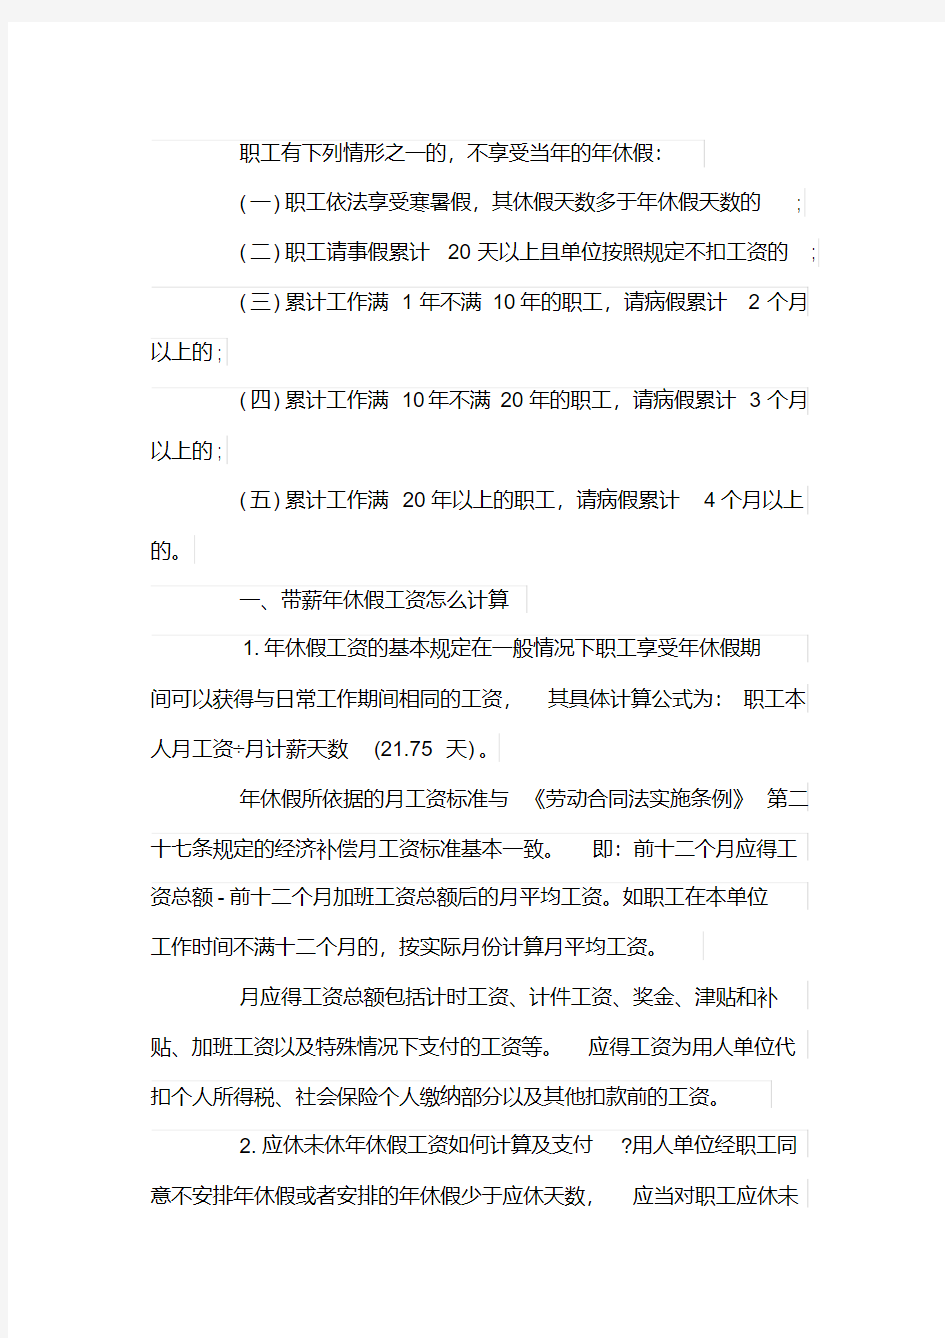 上海劳动法年假规定